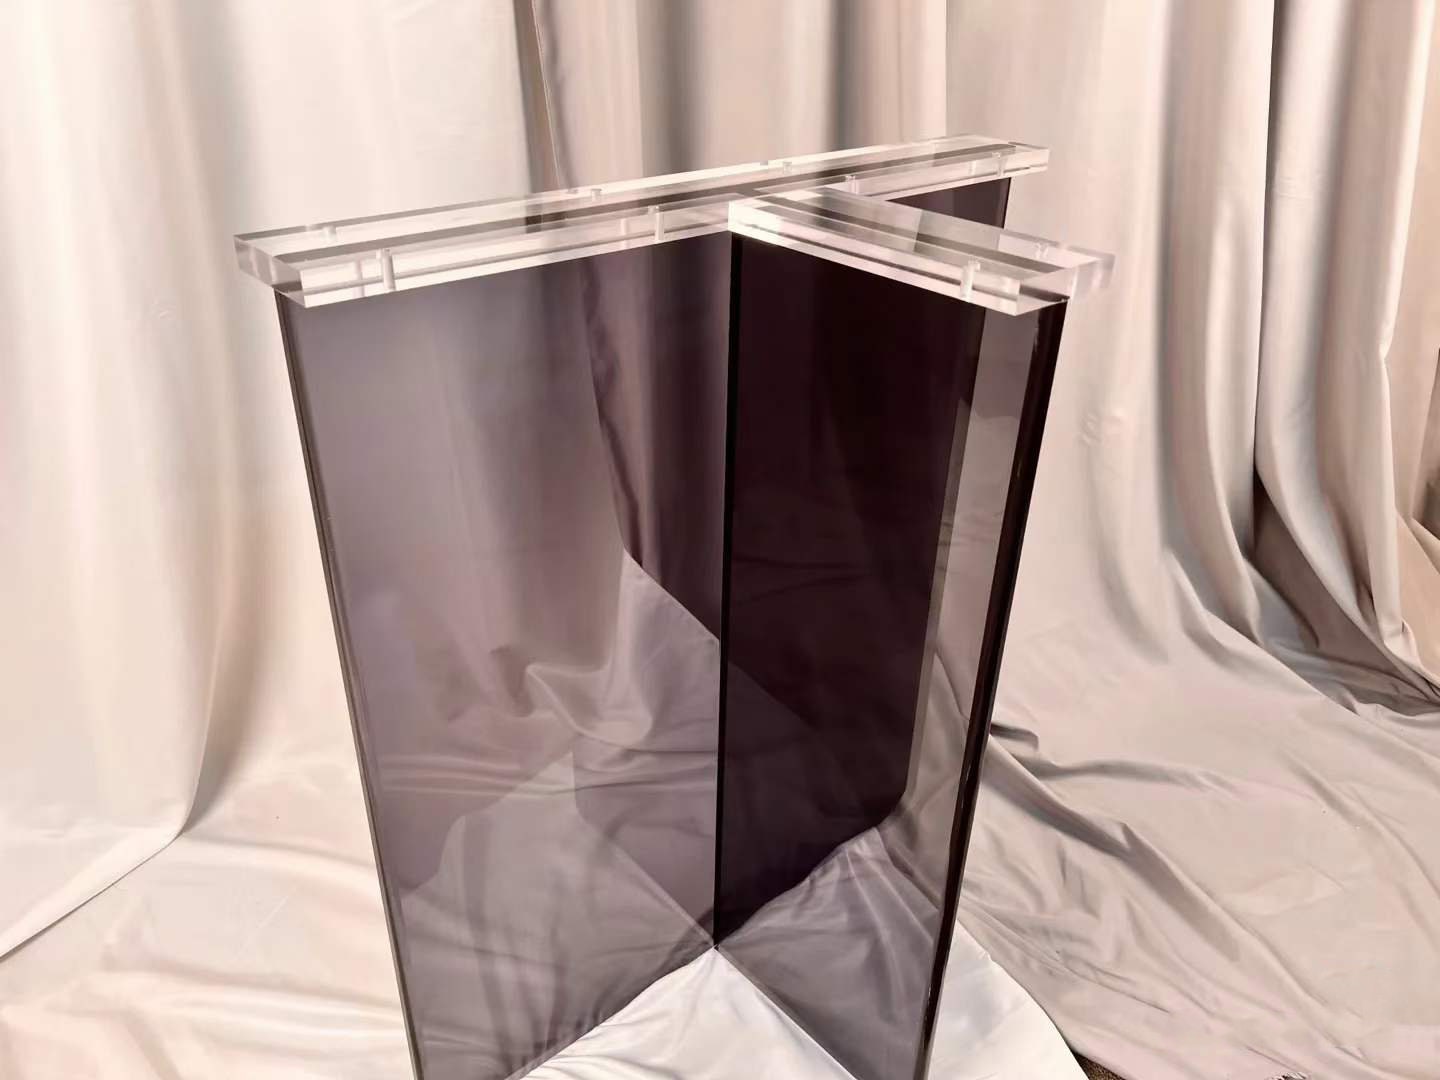 Pied de table en acrylique de couleur noire, pied de table moderne, pied en dalle acrylique, épaisseur : 3 cm (lot de 2)